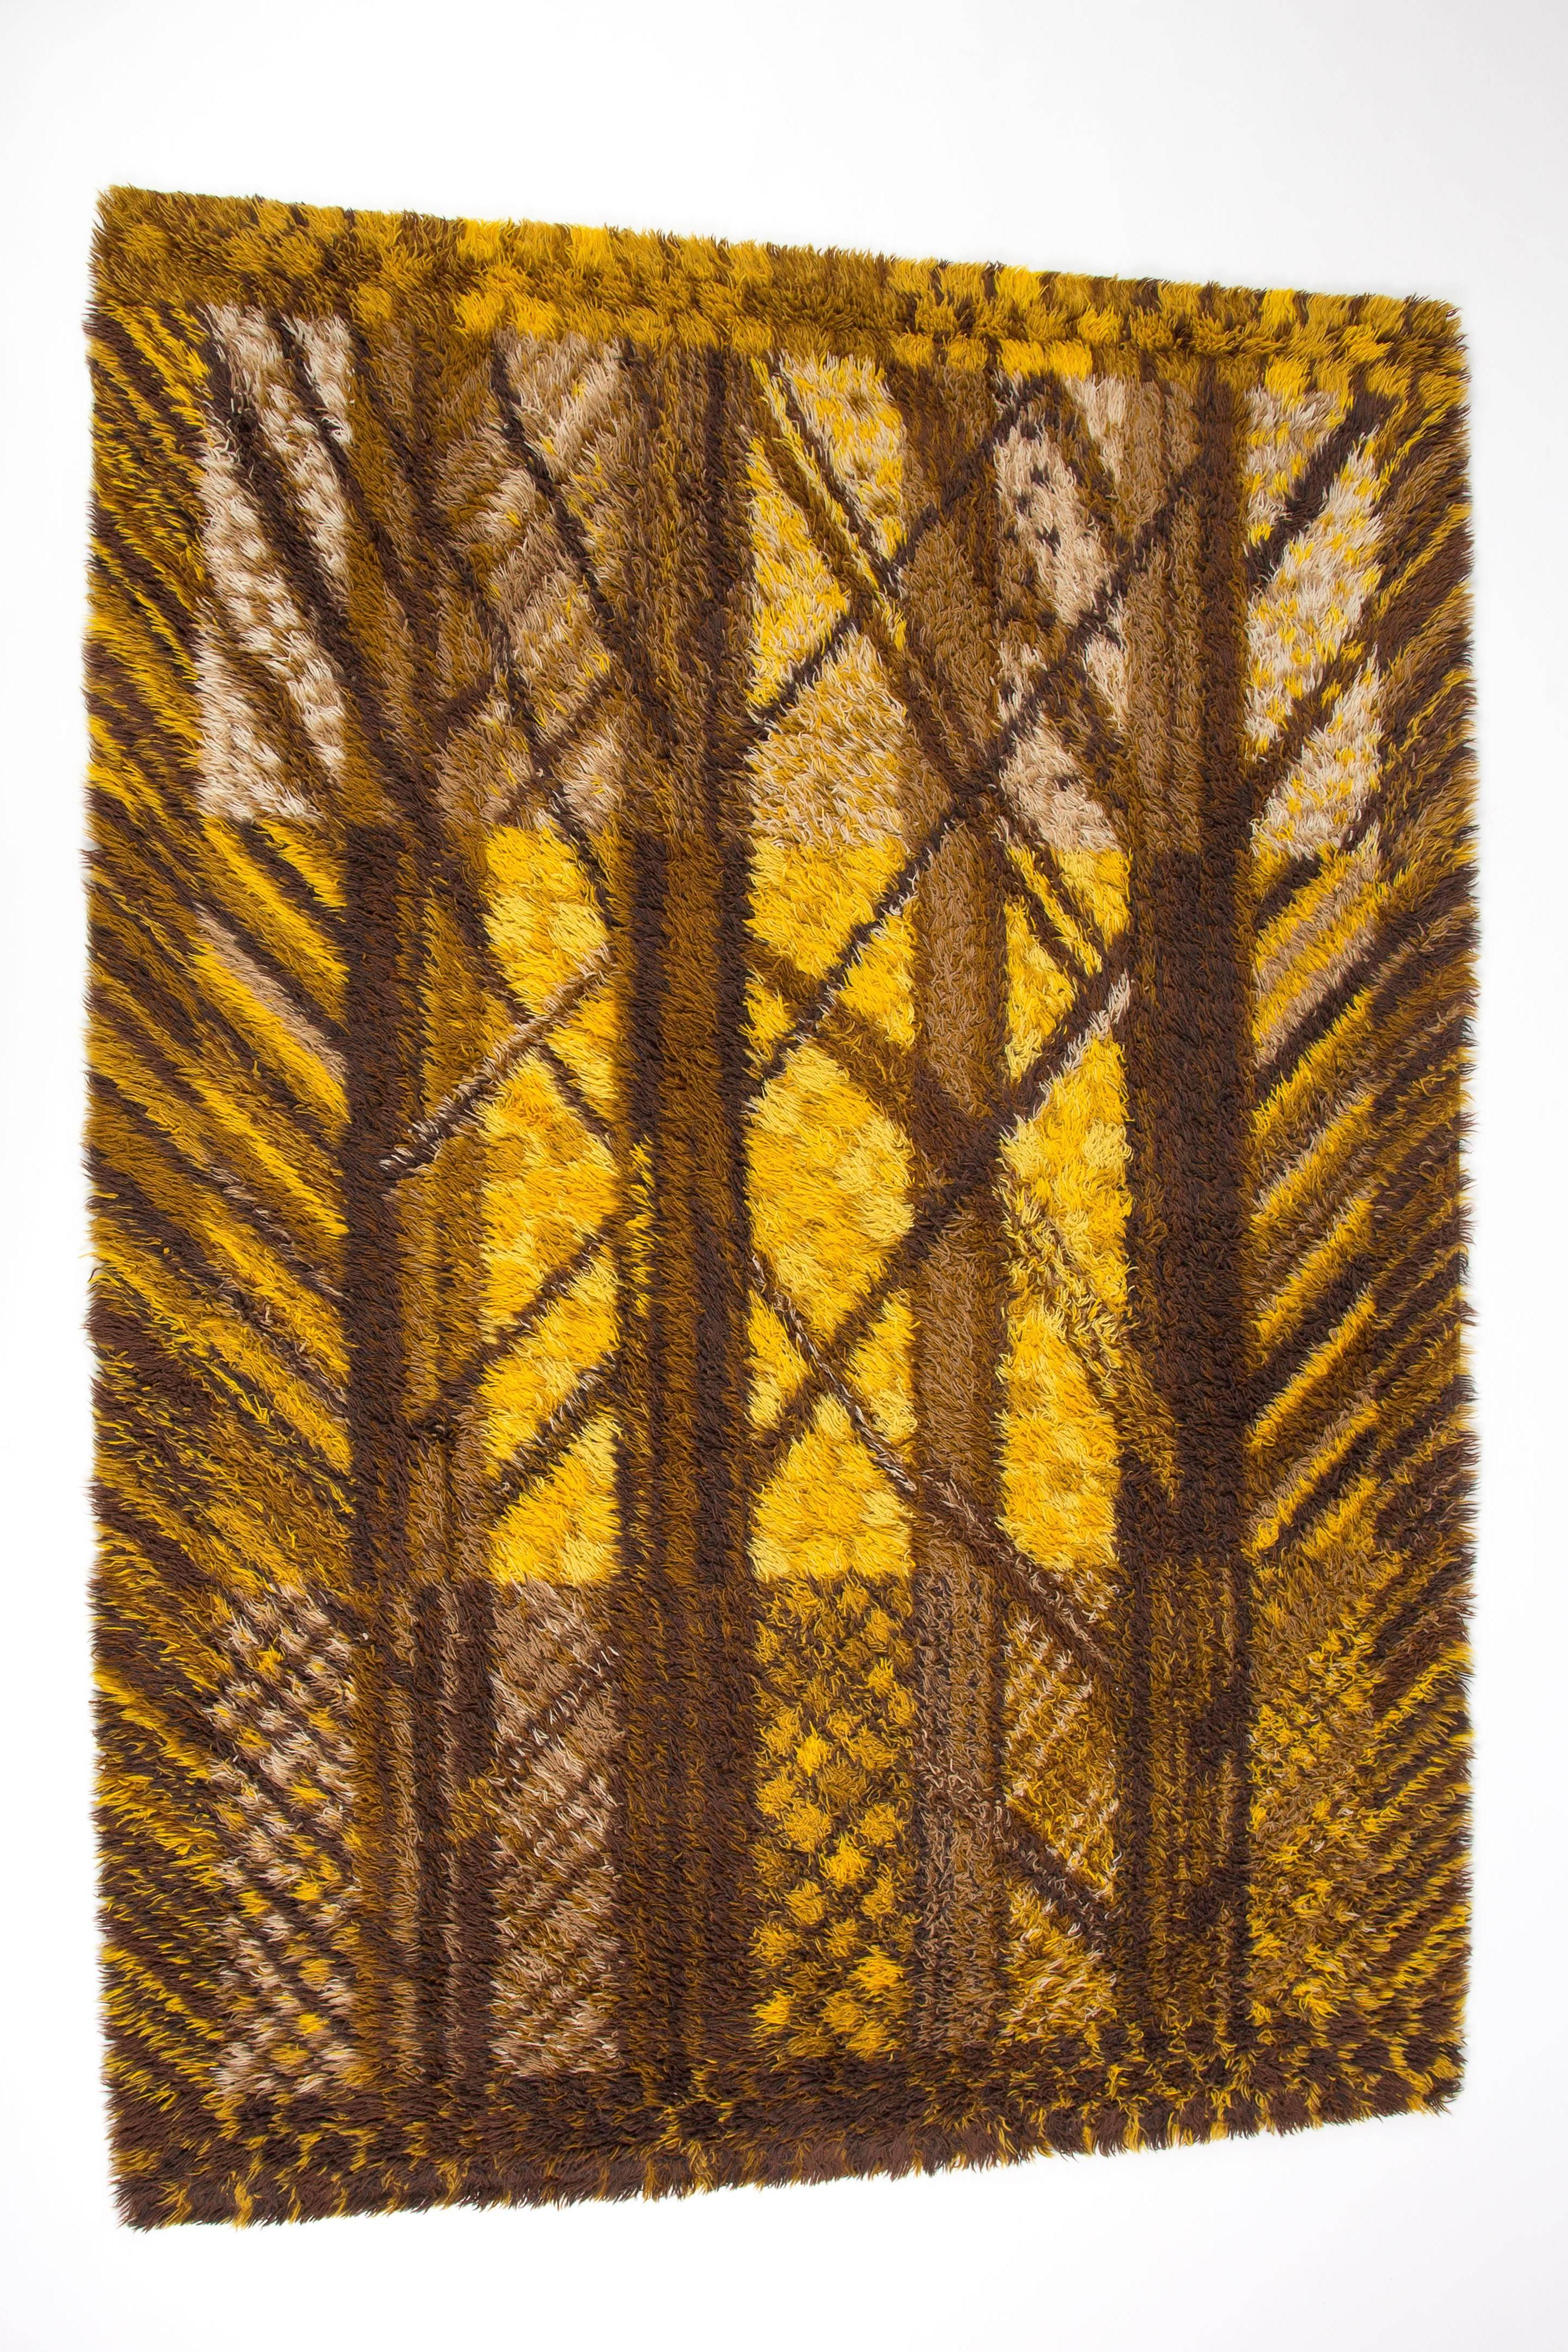 Swedish Marianne Richter Carpet Forest Of Wool Scandinavian